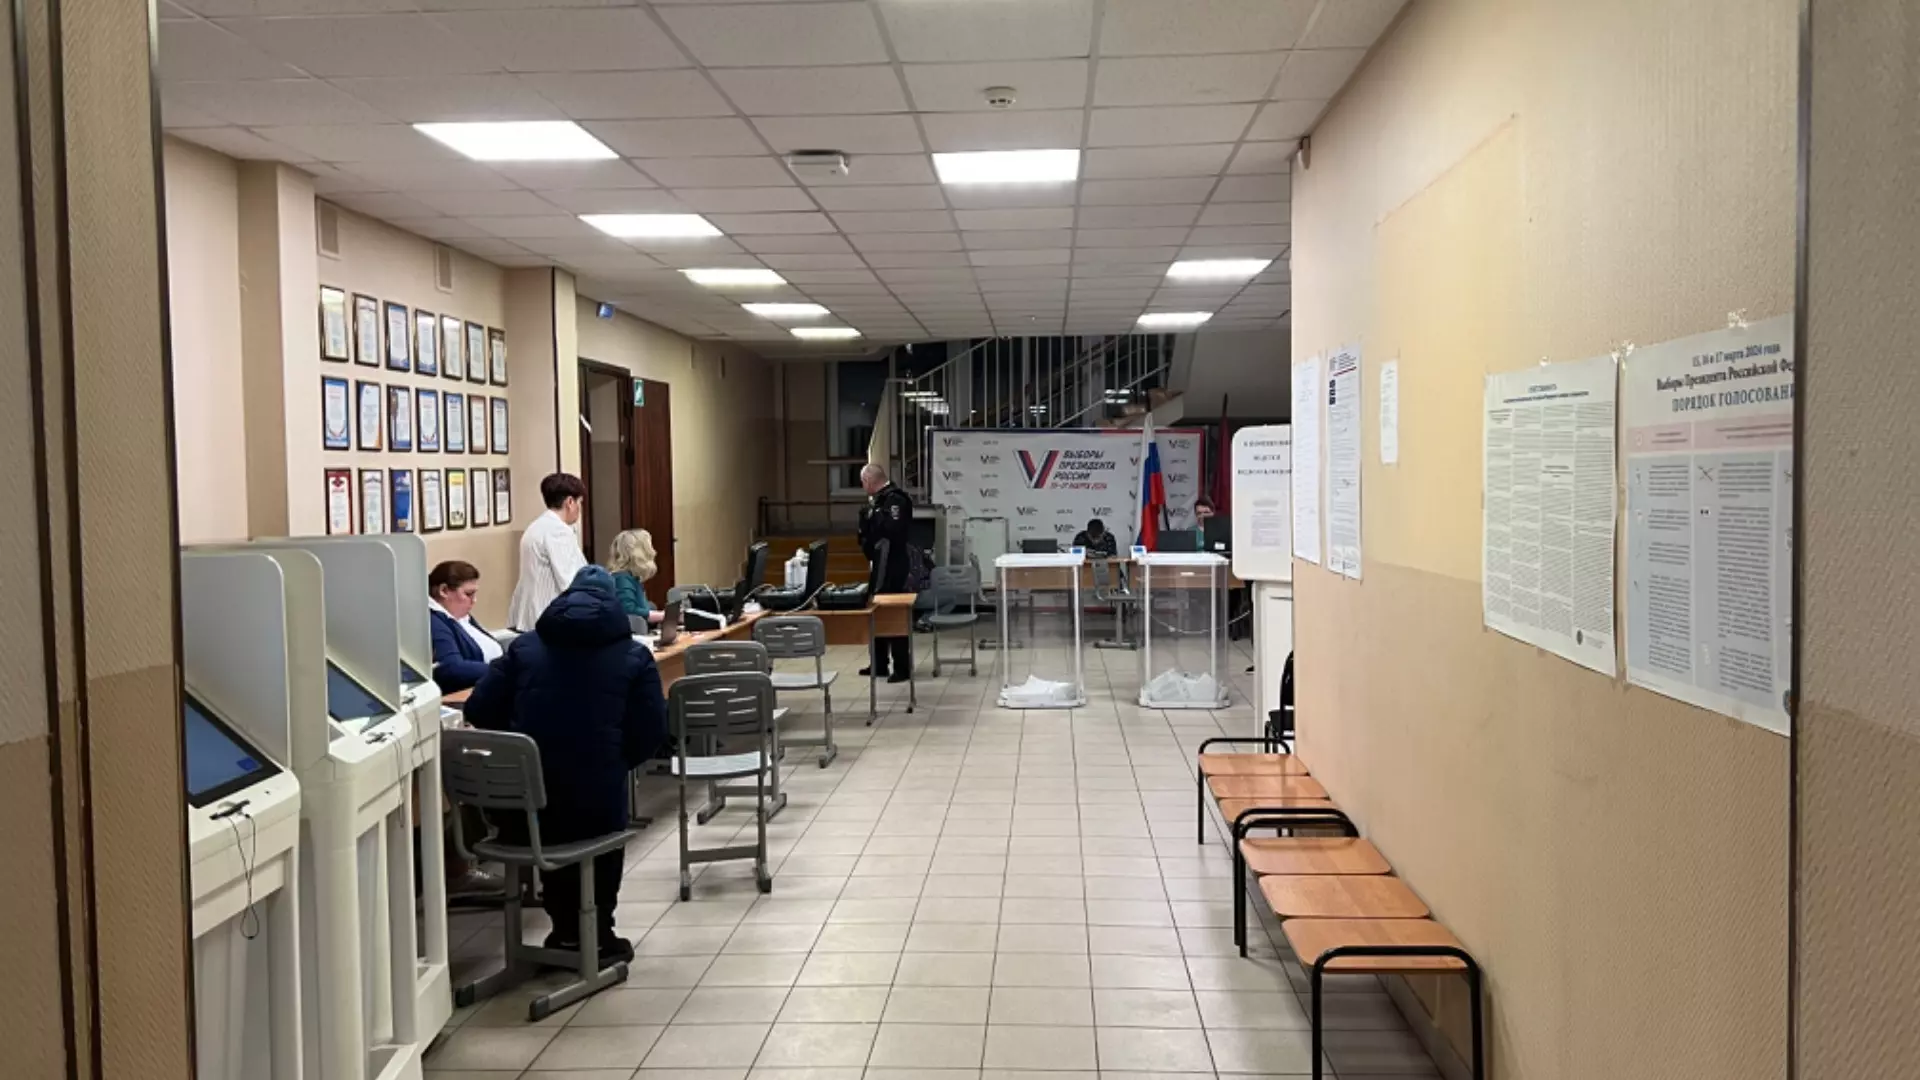 Личный опыт: 5 вещей, которые неприятно удивили на избирательном участке в Москве